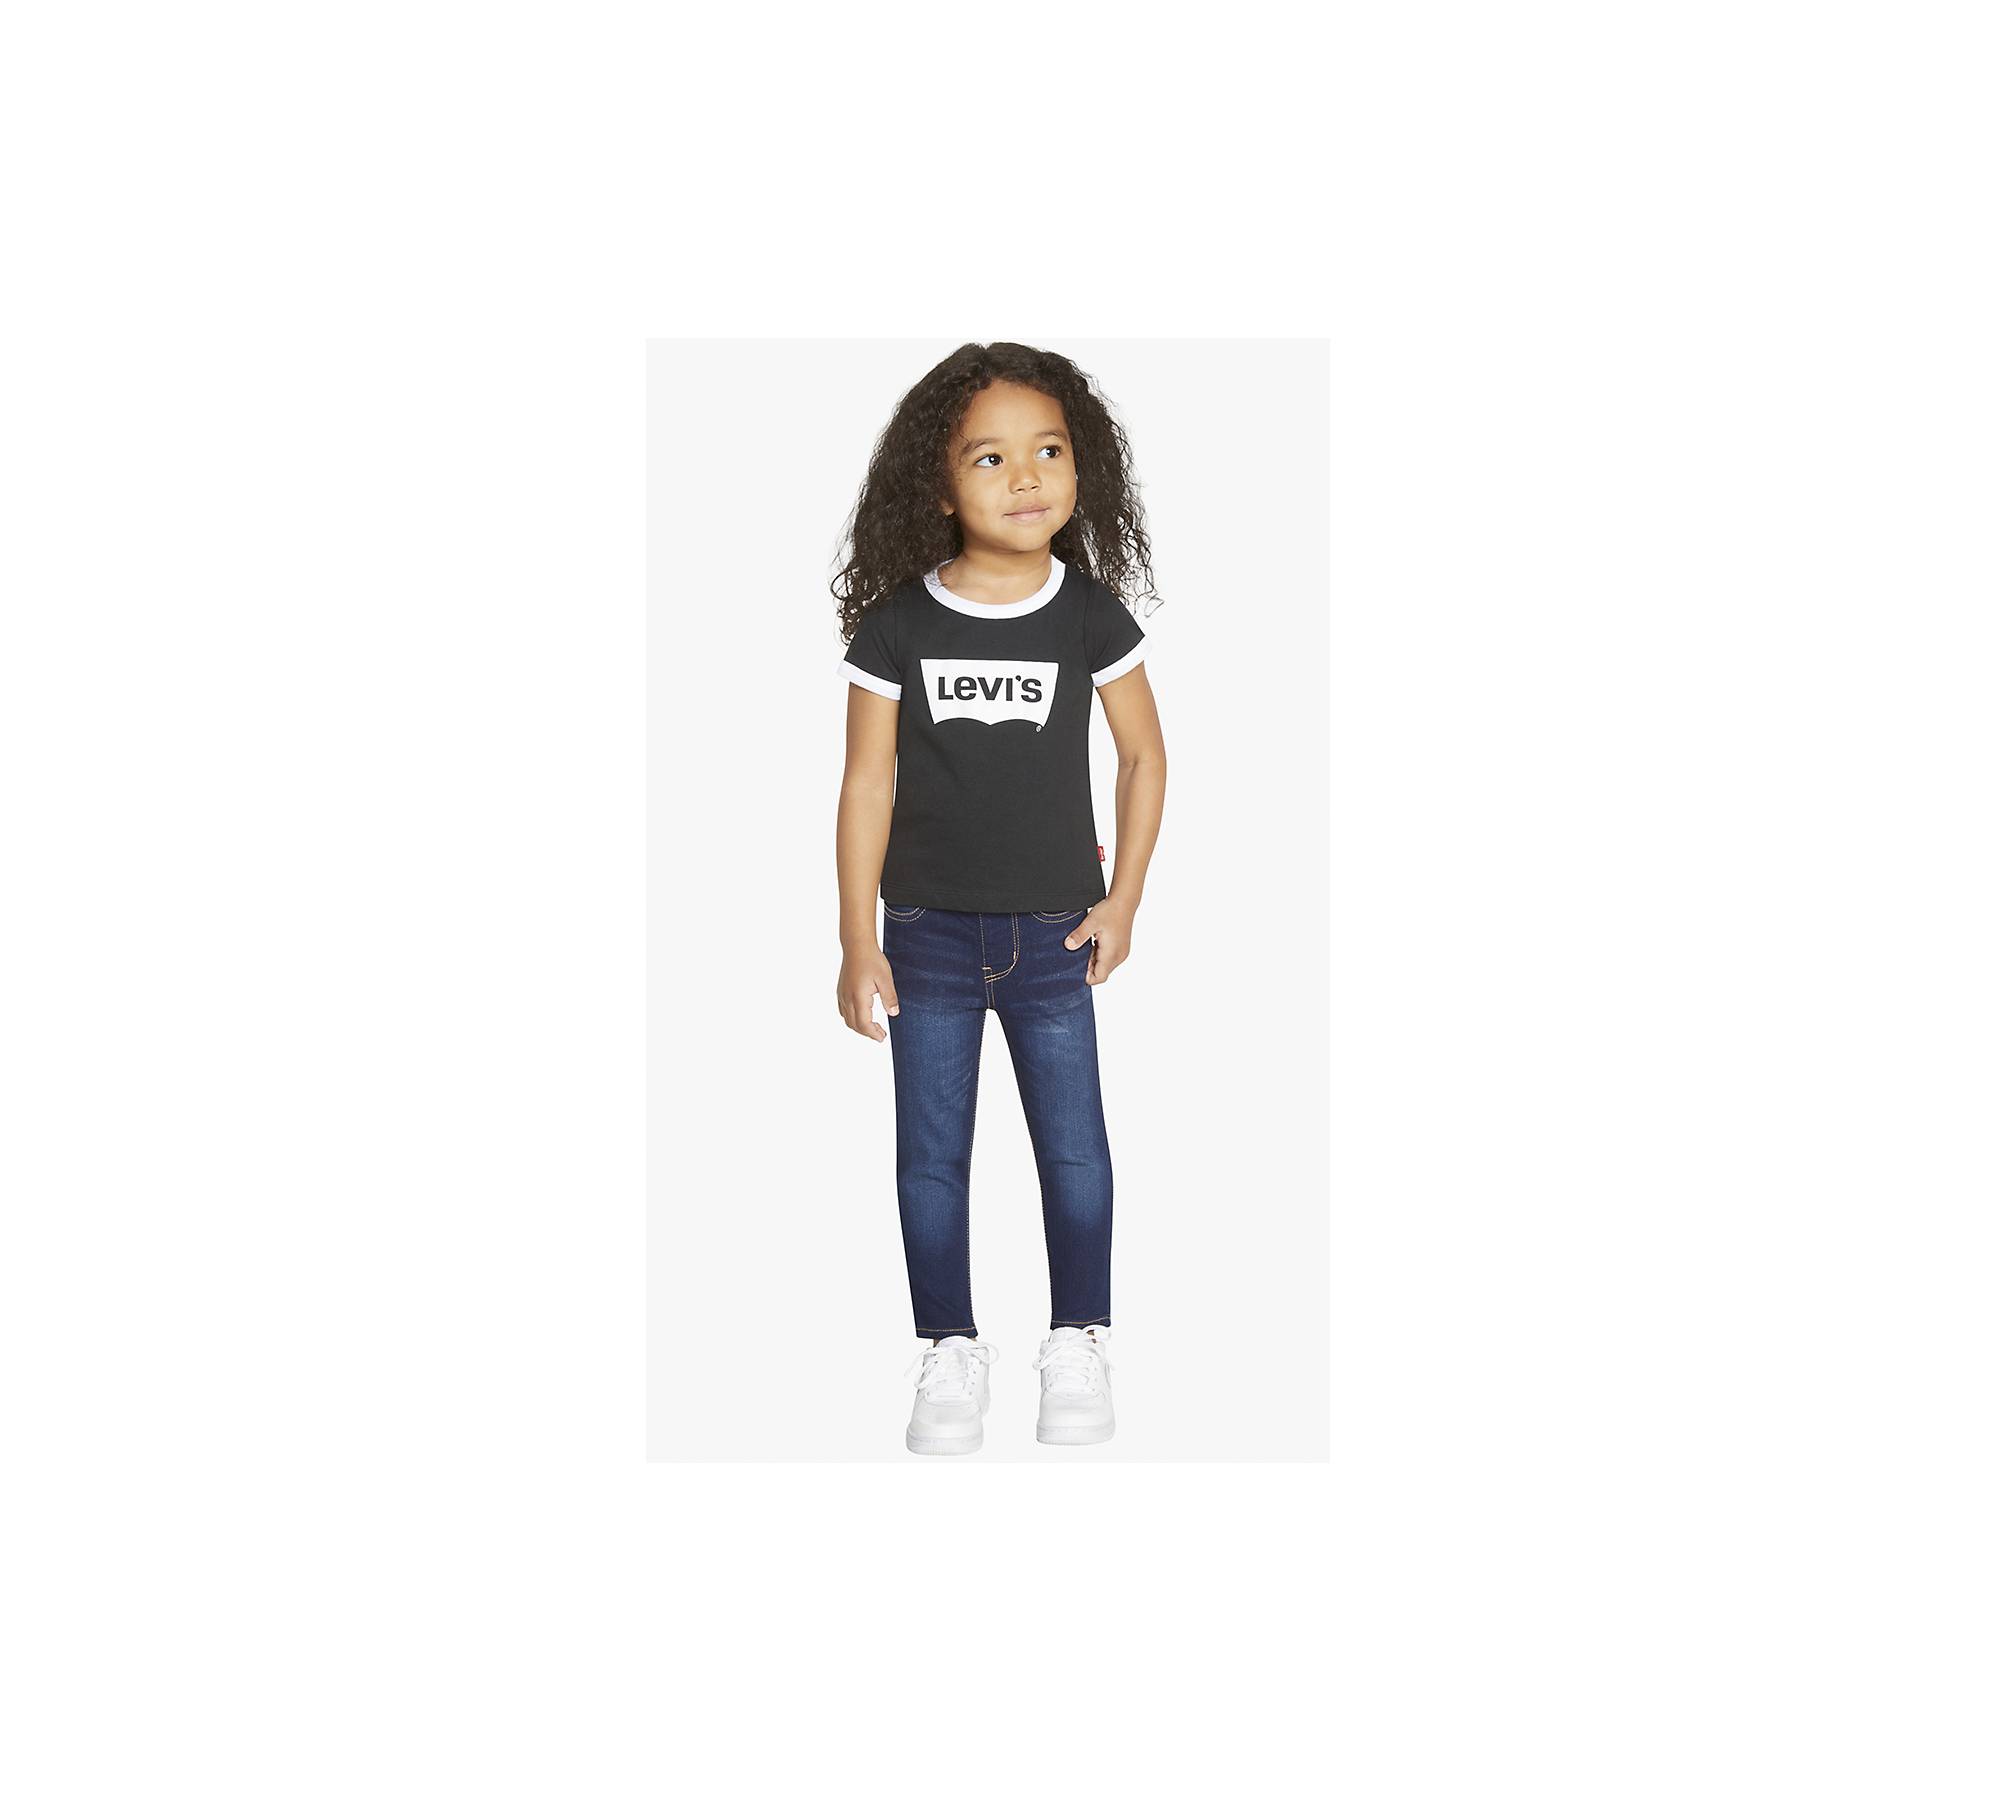 Toddler Girls 2t-4t Levi's® Retro Ringer Tee Shirt - Black 